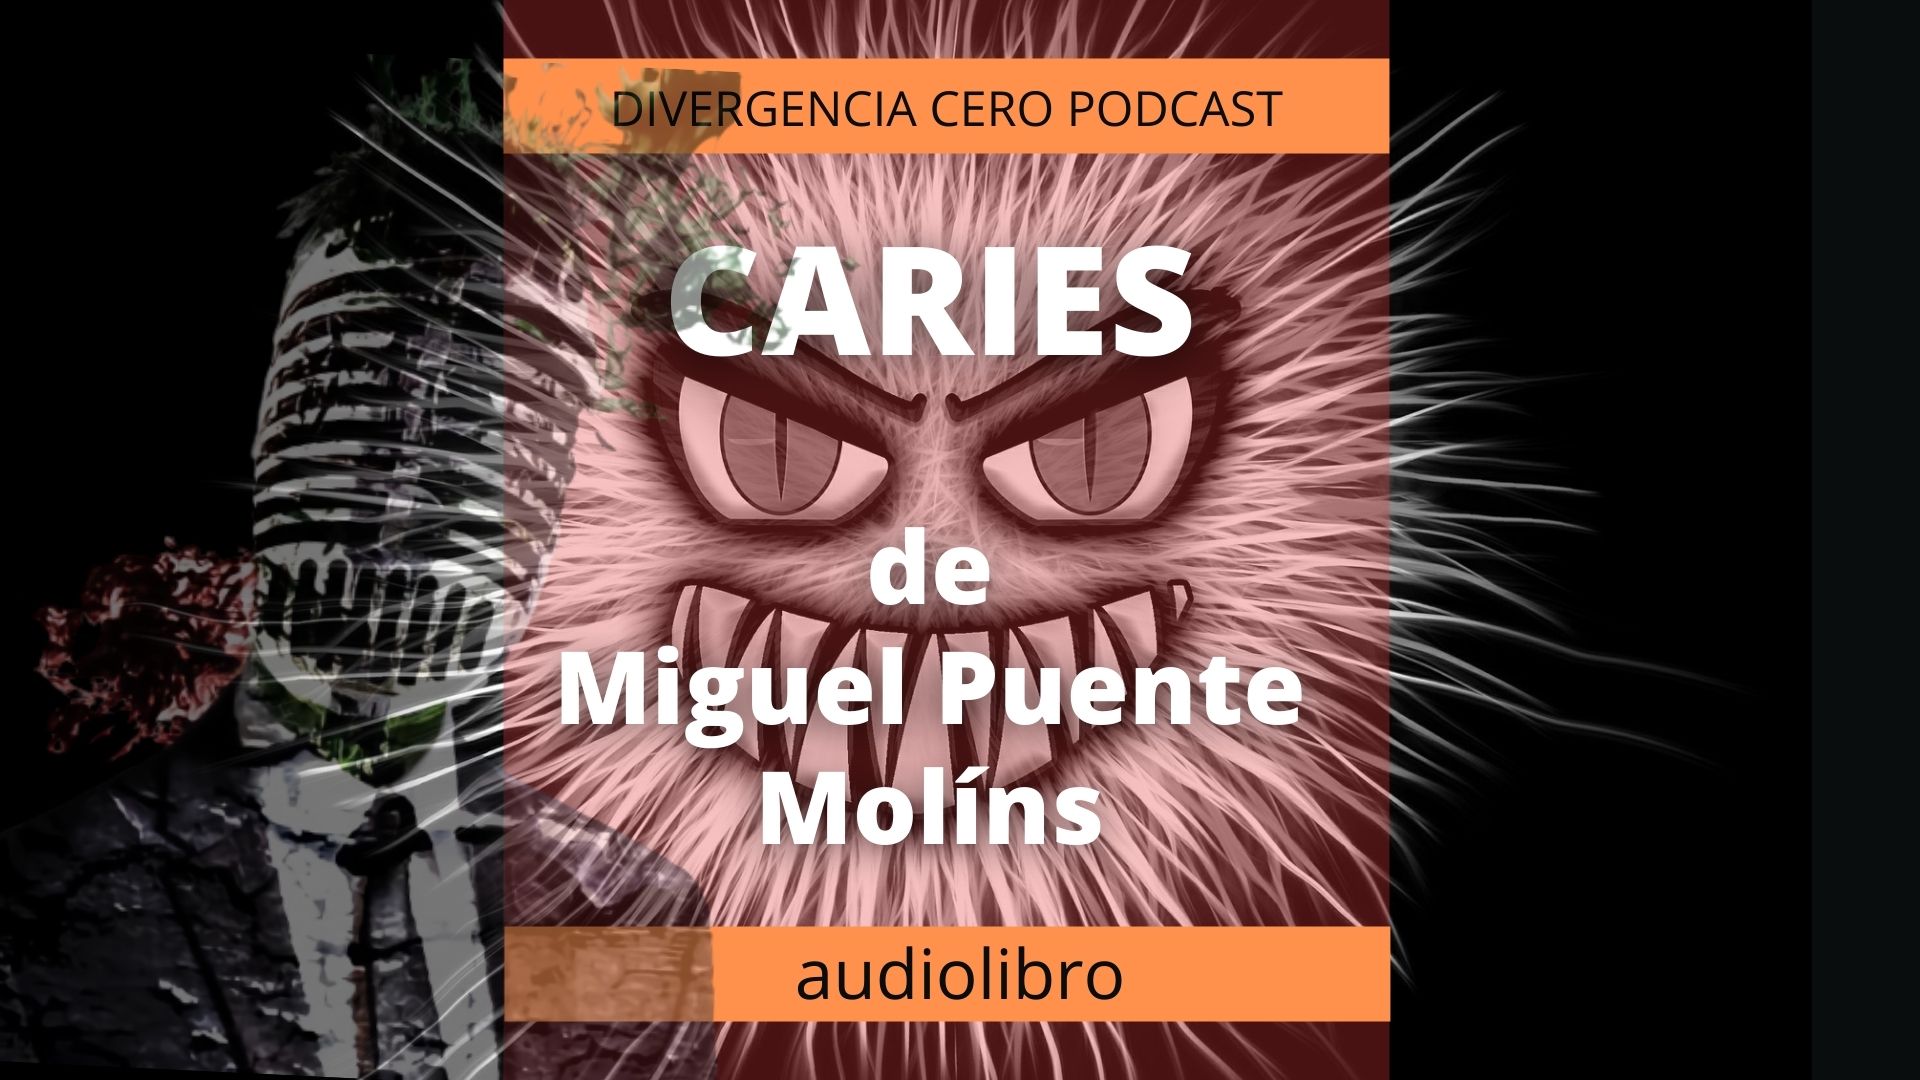 CARIES, de Miguel Puente Molíns | Audiolibro | Voz Humana | Dramatización